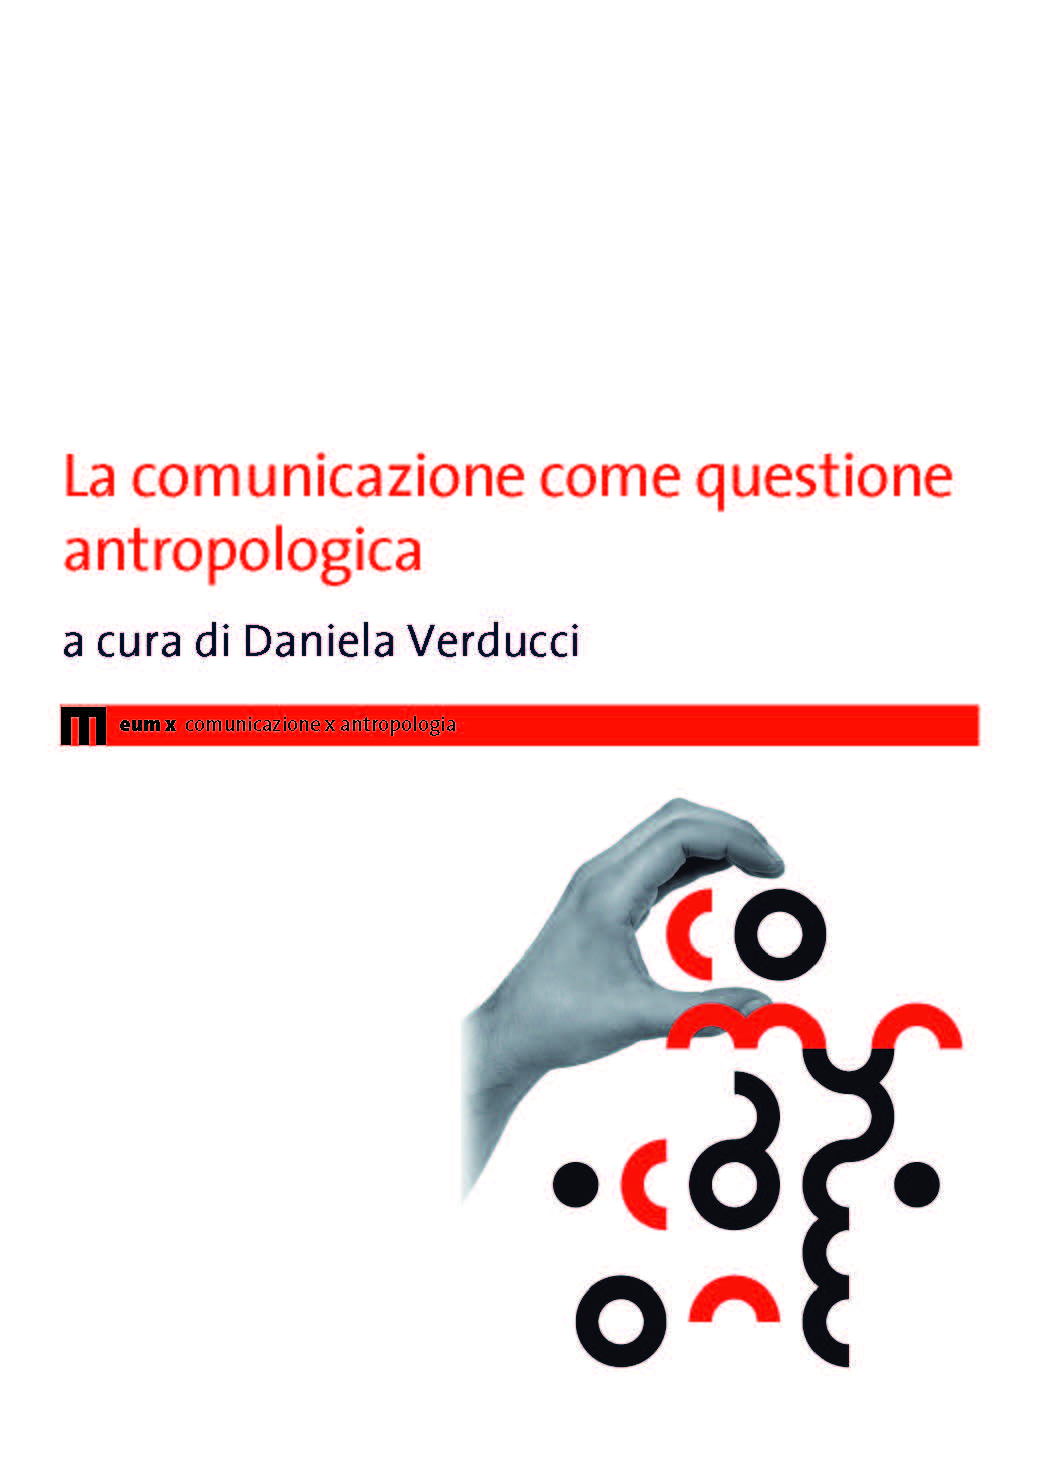 La comunicazione come questione antropologica